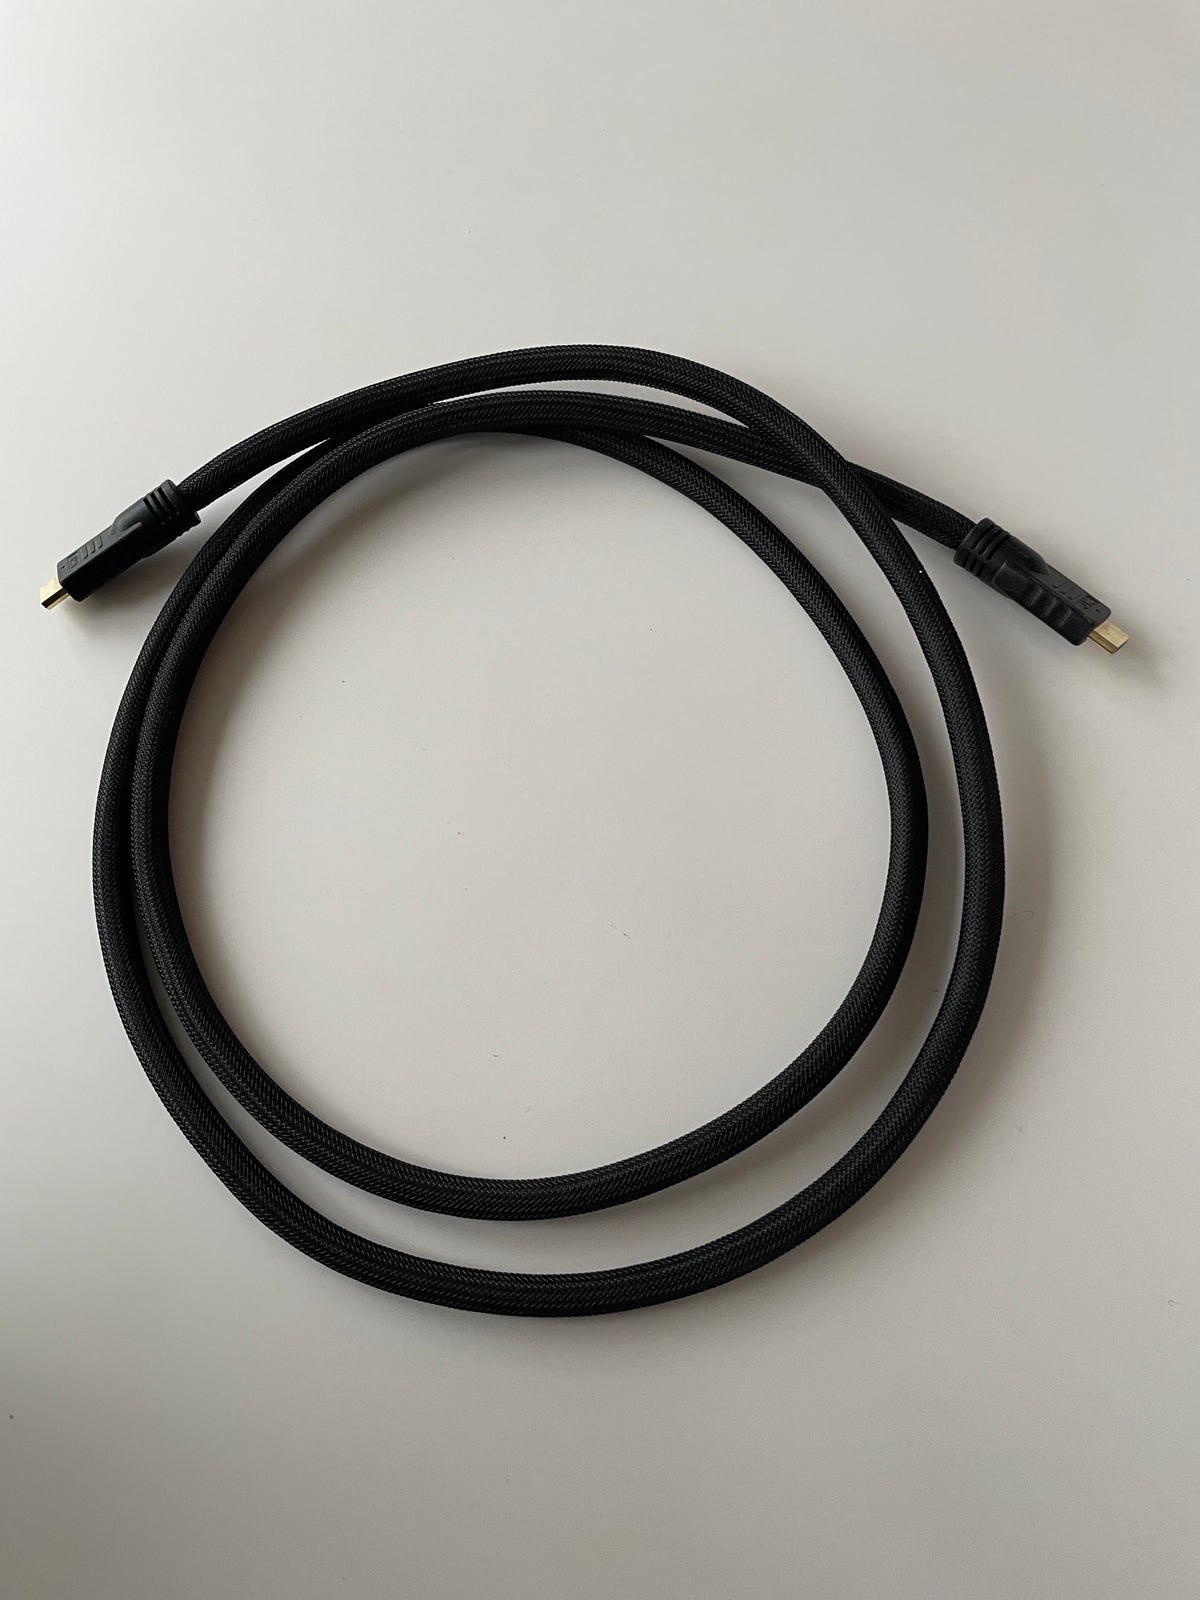 HDMI-kabler 14 stk. 1m-15m, God